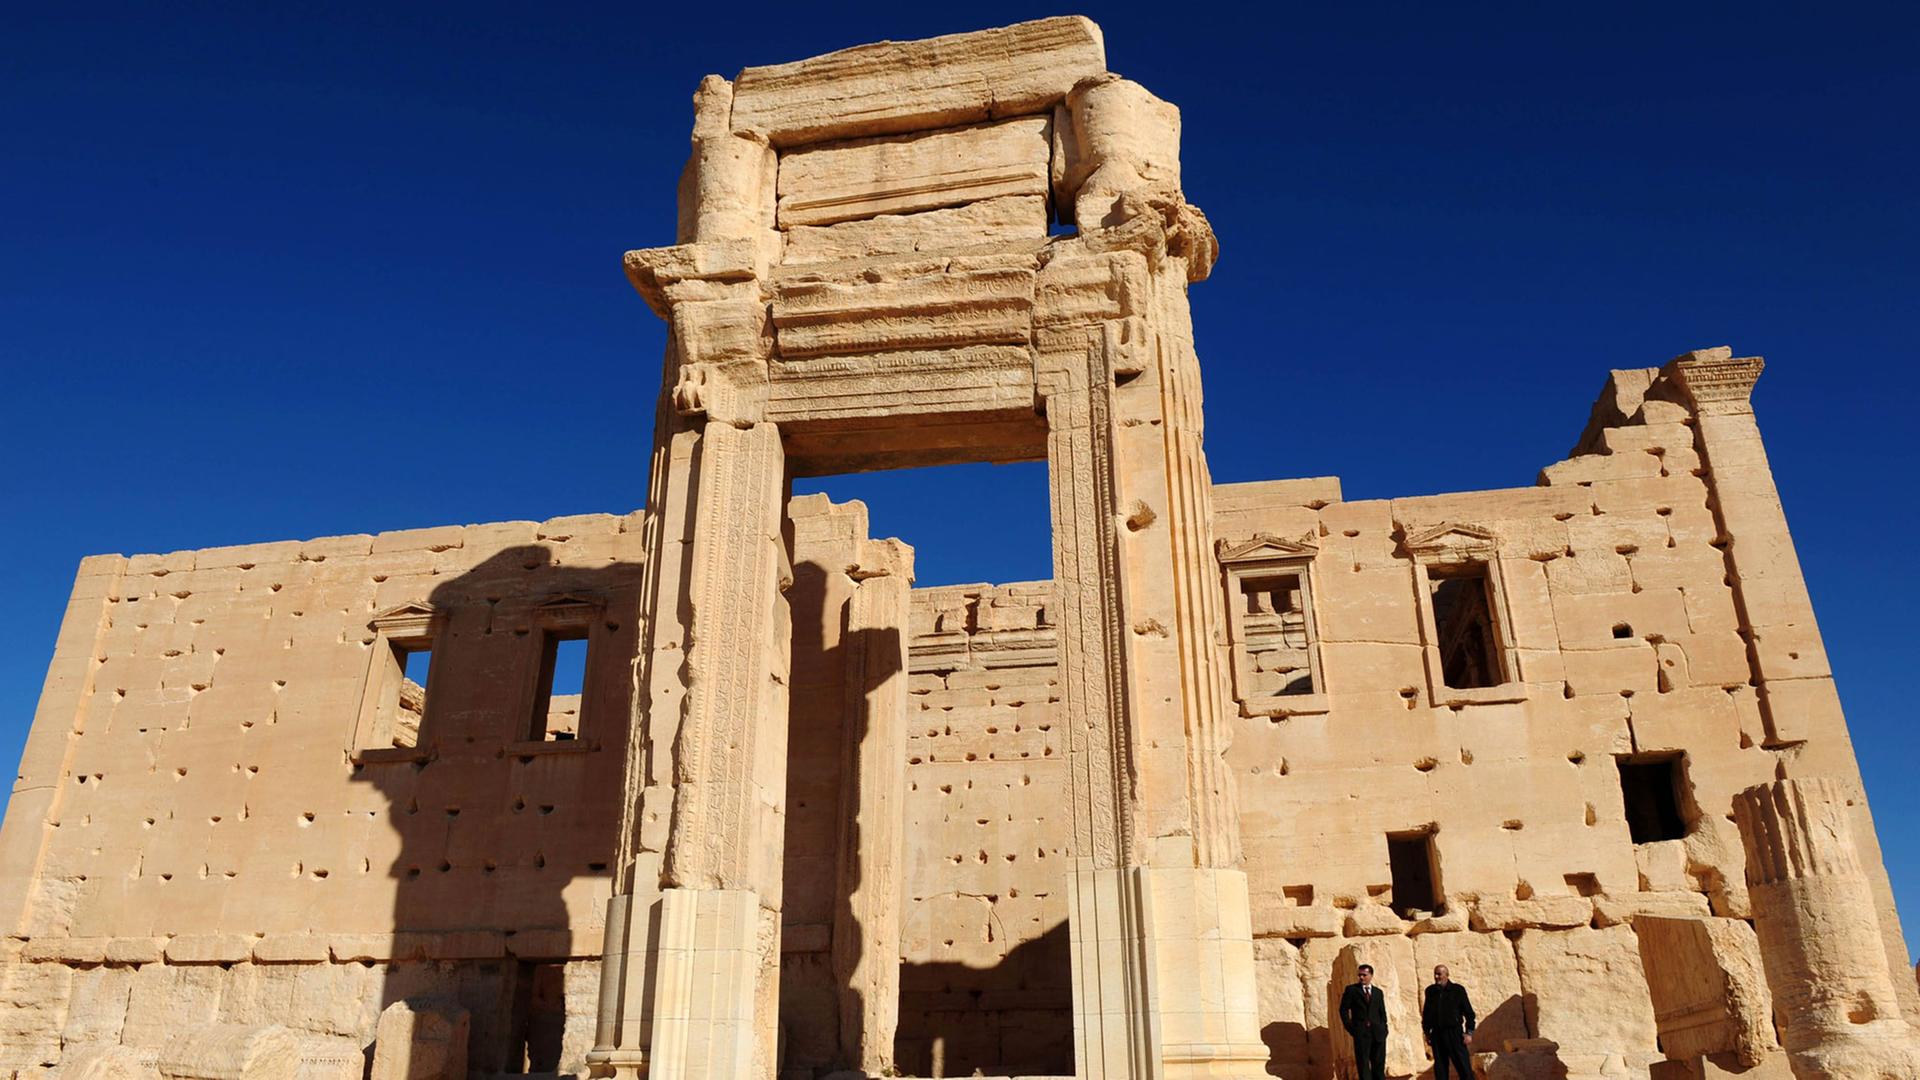 Der Tempel des Baal in der antiken Oasenstadt Palmyra in Syrien im November 2011, vor der Zerstörung durch die Terrormiliz Islamischer Staat 2015